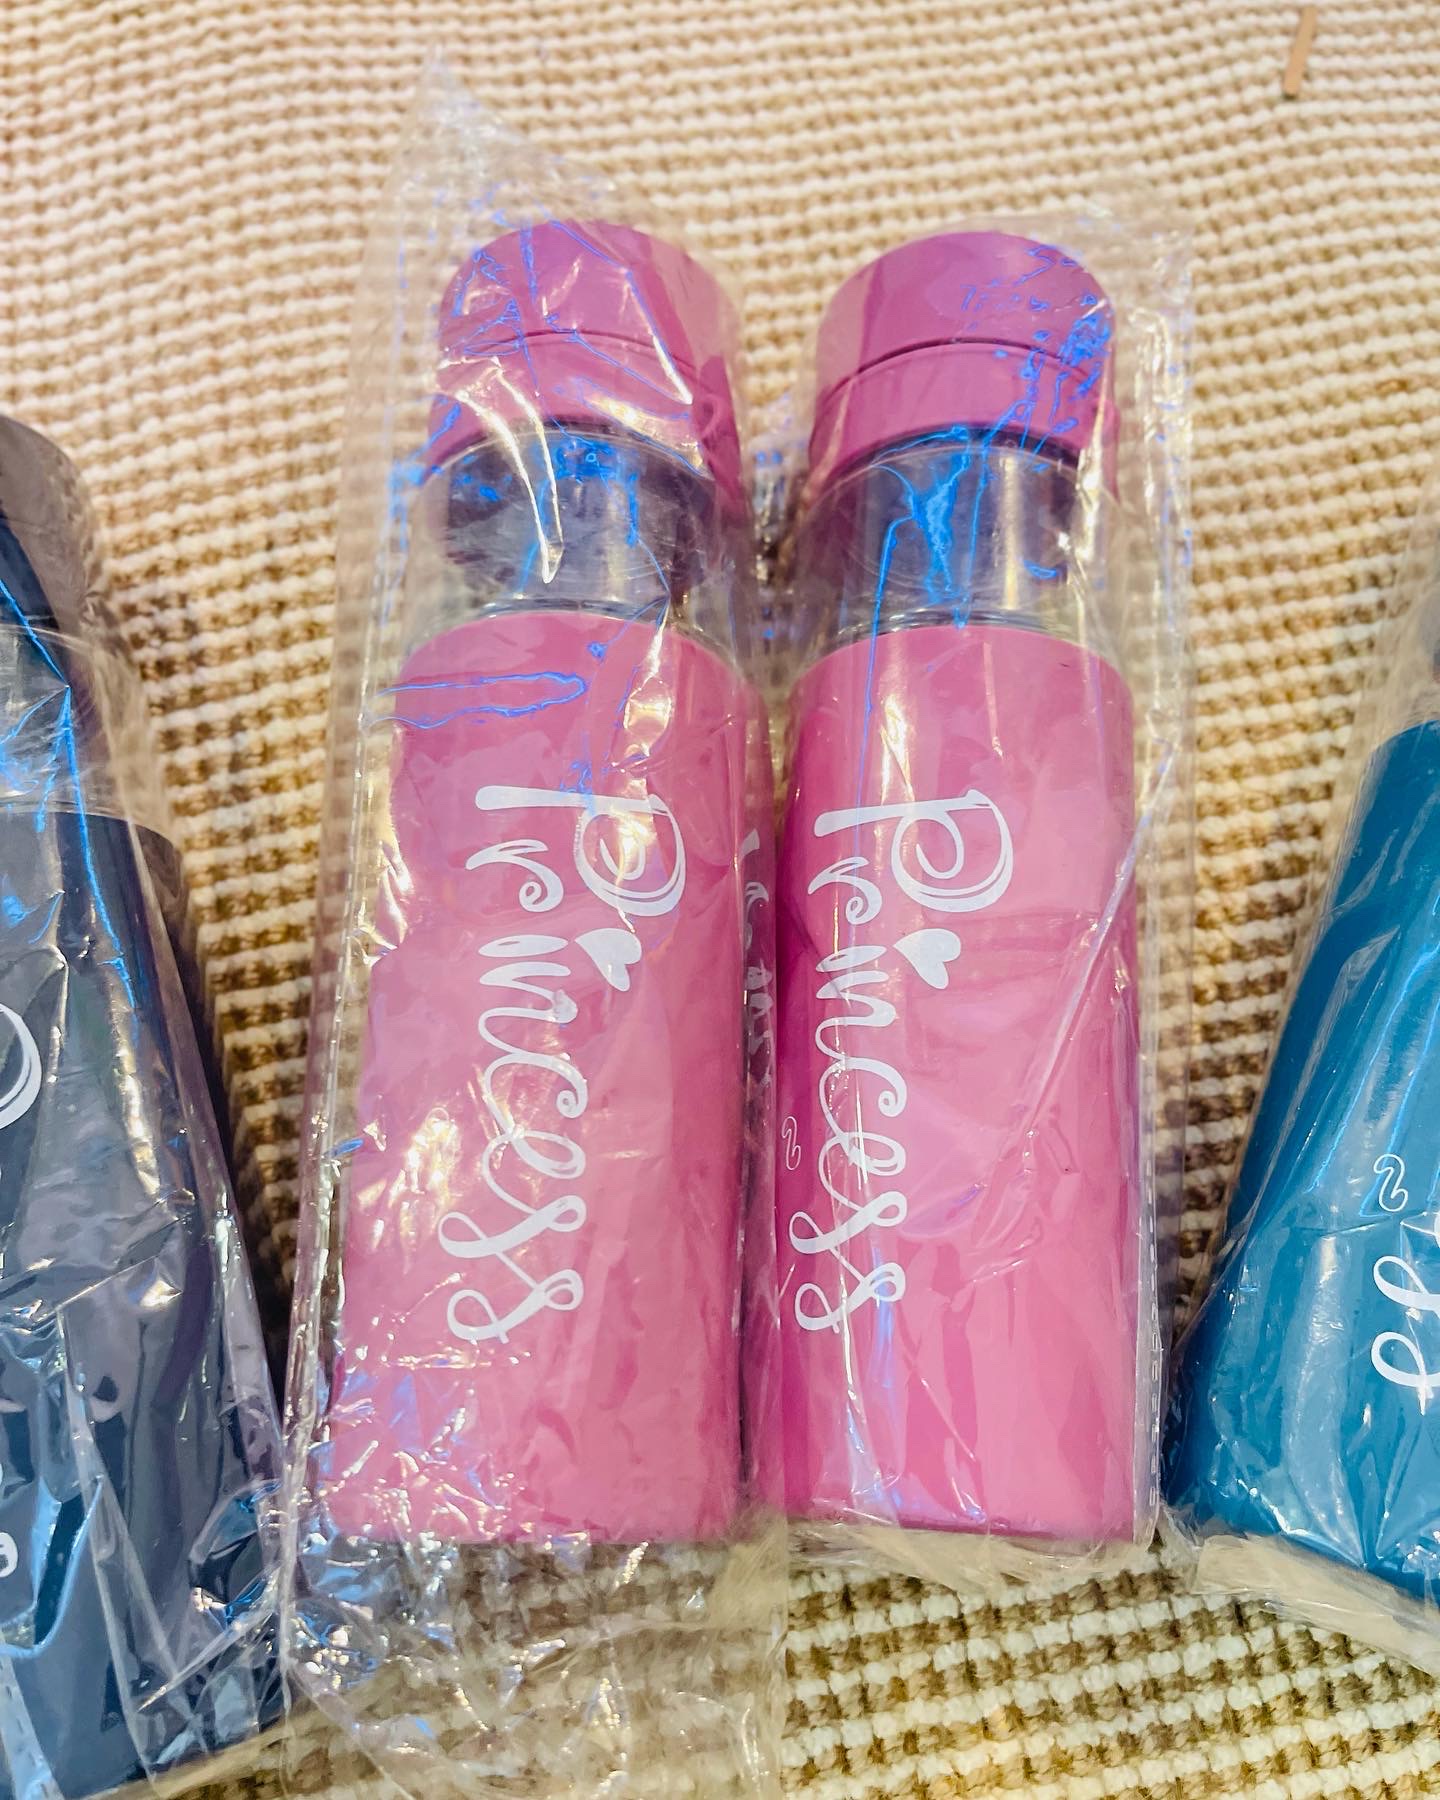 Princess water bottles